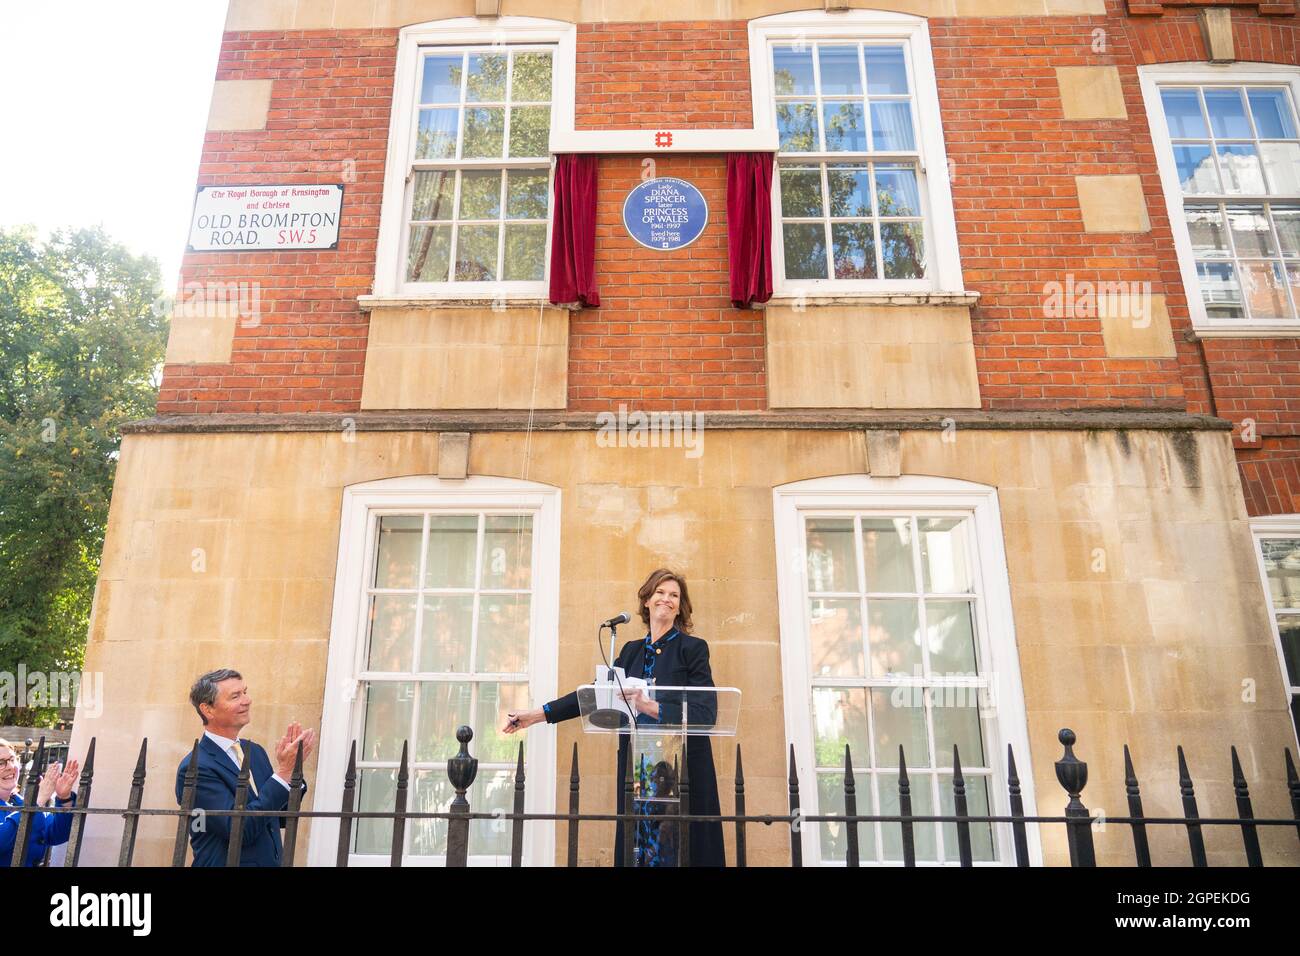 L'ancienne flatte de la princesse Diana, Virginia Clarke, et le président du patrimoine anglais, Sir Tim Laurence, dévoilent une plaque bleue du patrimoine anglais à Diana, princesse du pays de Galles, à l'extérieur de Coleherne court, Old Brompton Road, Londres. Date de la photo: Mercredi 29 septembre 2021. Banque D'Images